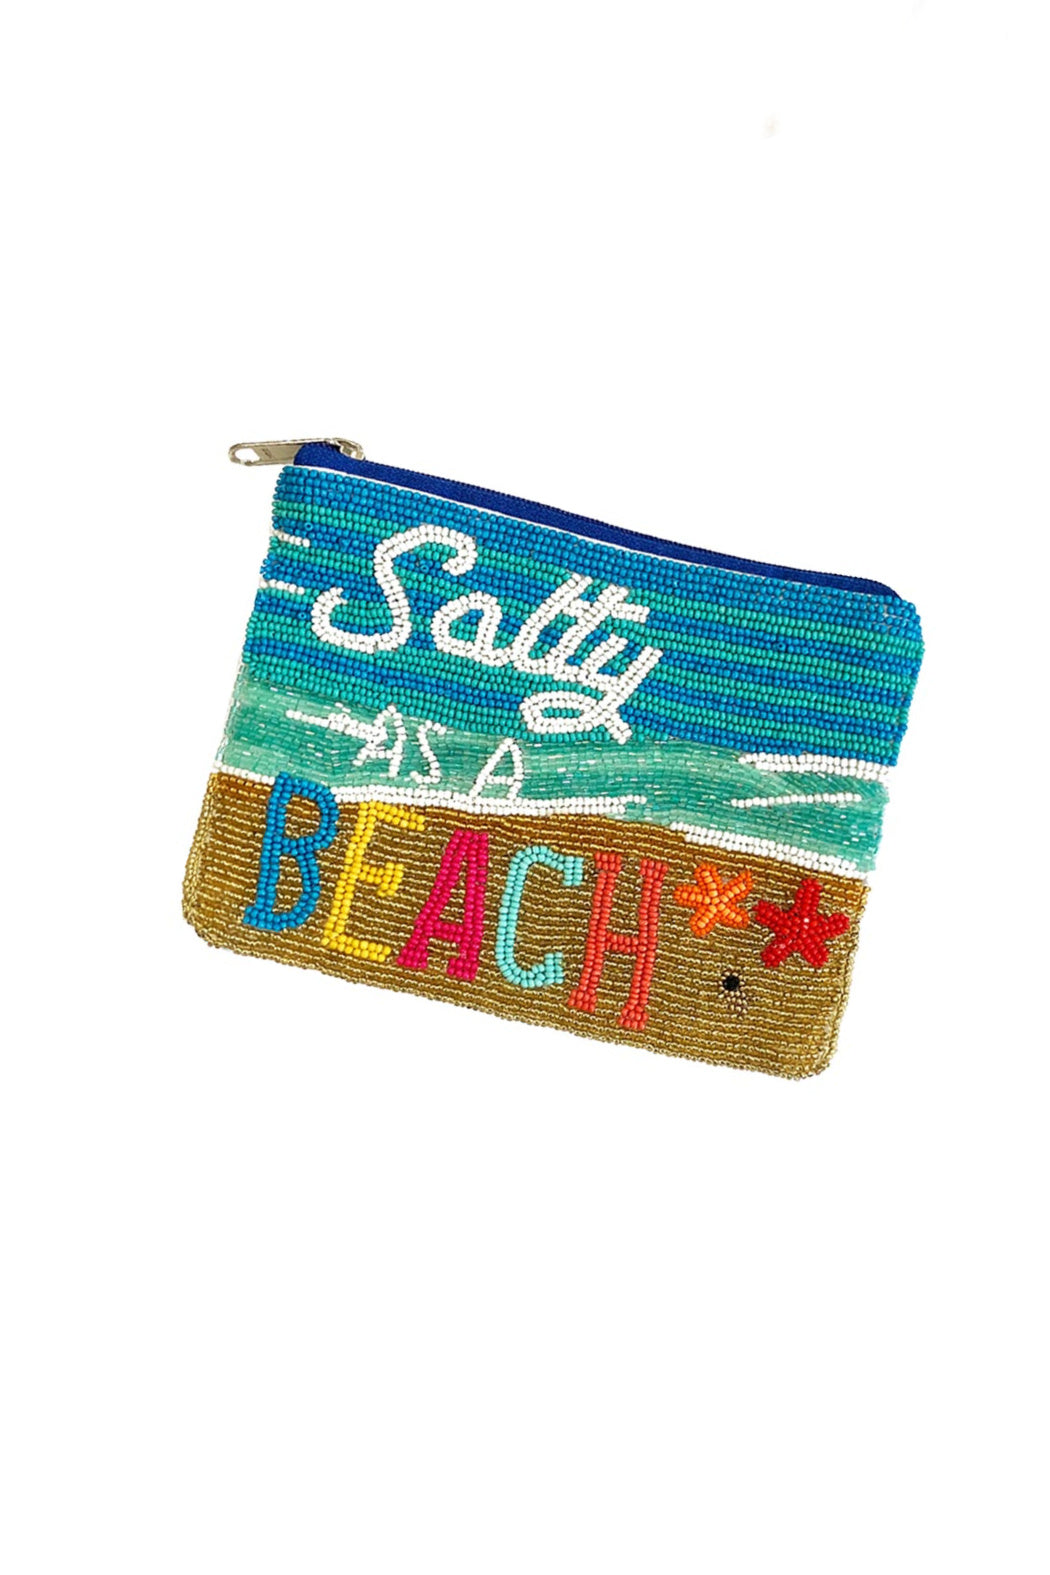 Salty As A Beach Pouch